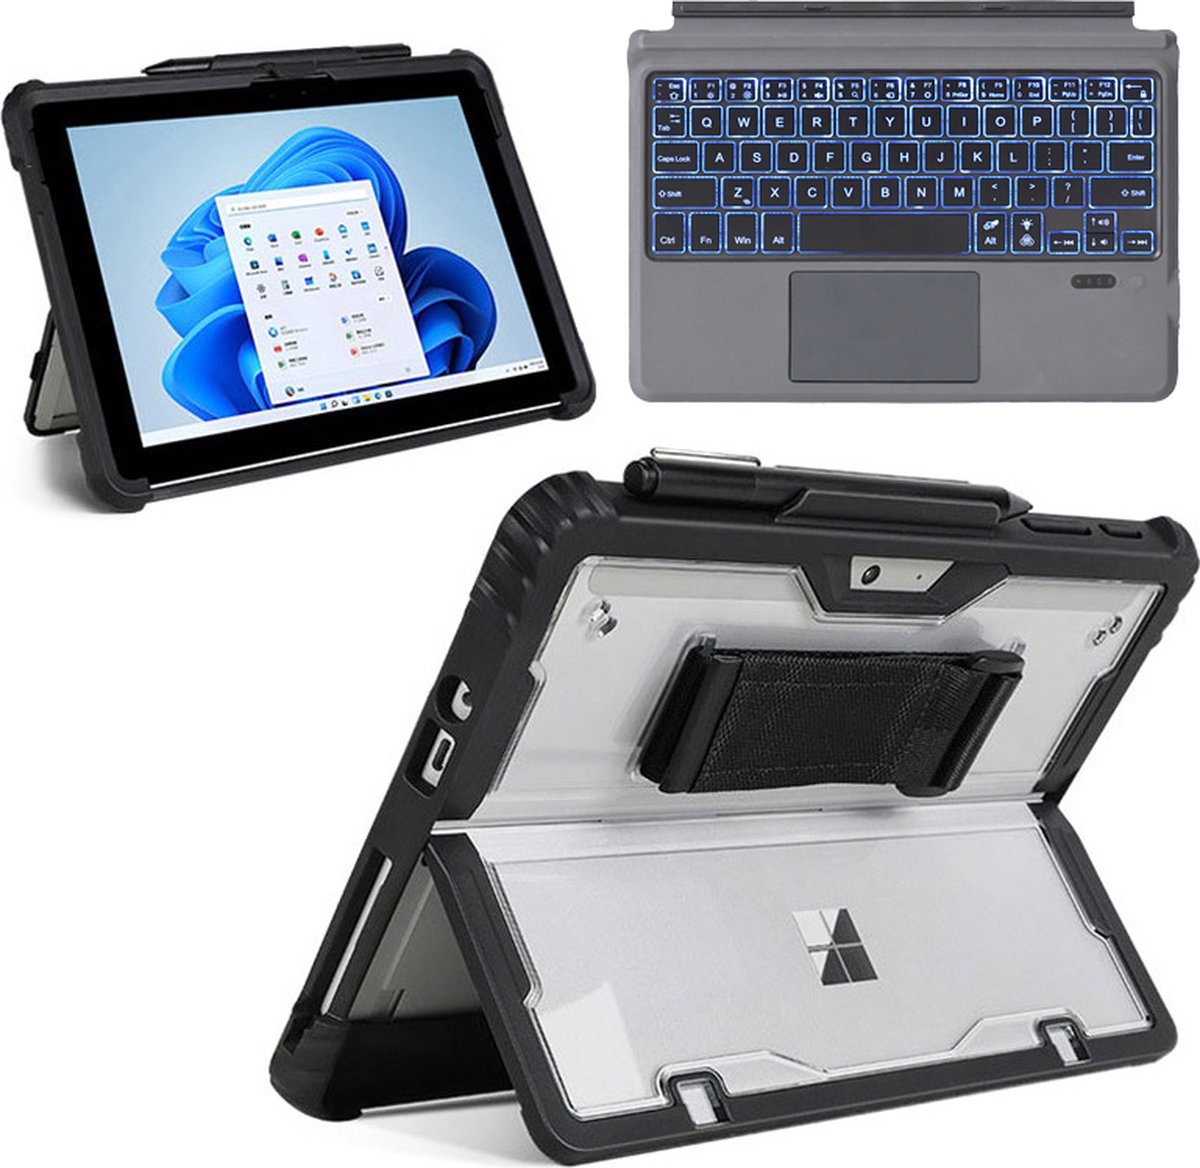 Toetsenbord & Tablet Hoes geschikt voor Microsoft Surface Pro 3/4/5/6/7 - Bluetooth Toetsenbord met Verlichting en Touchpad - Zwart